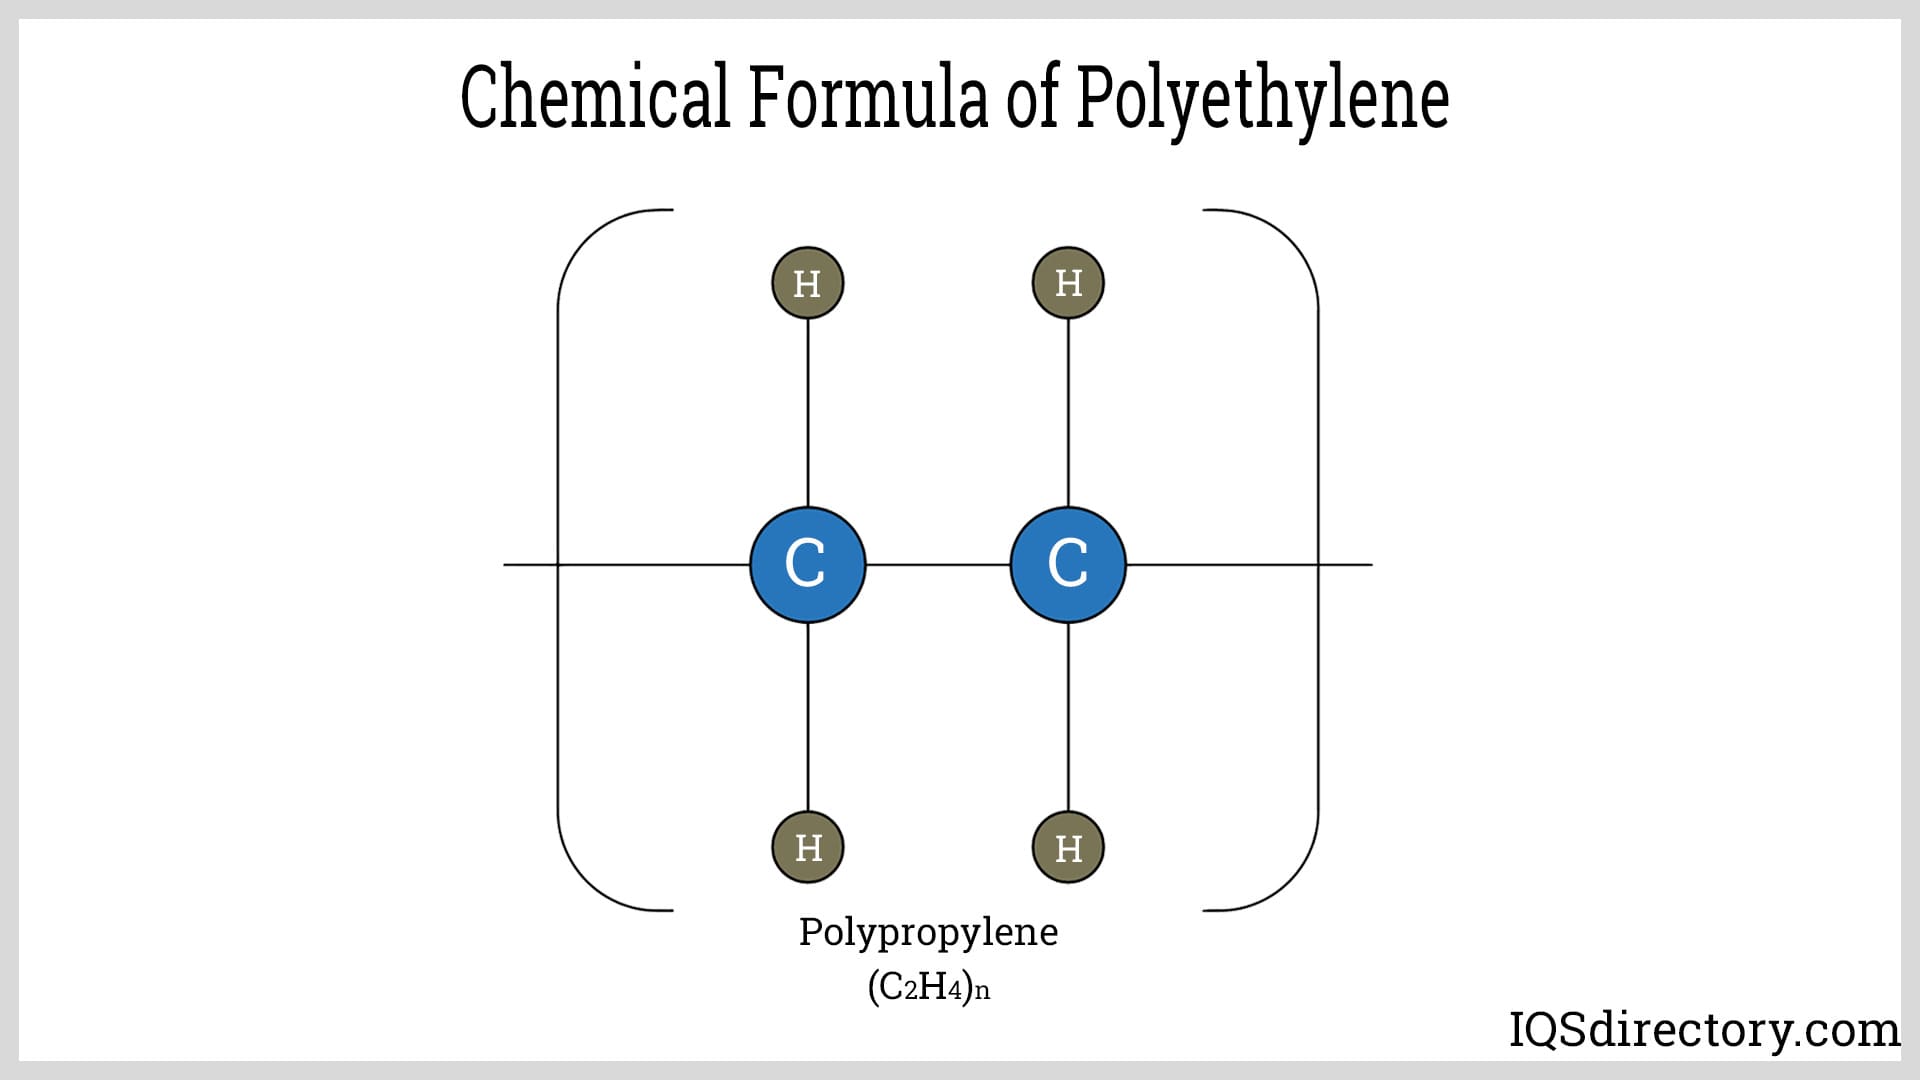 Chemical Formula of Polyethylene